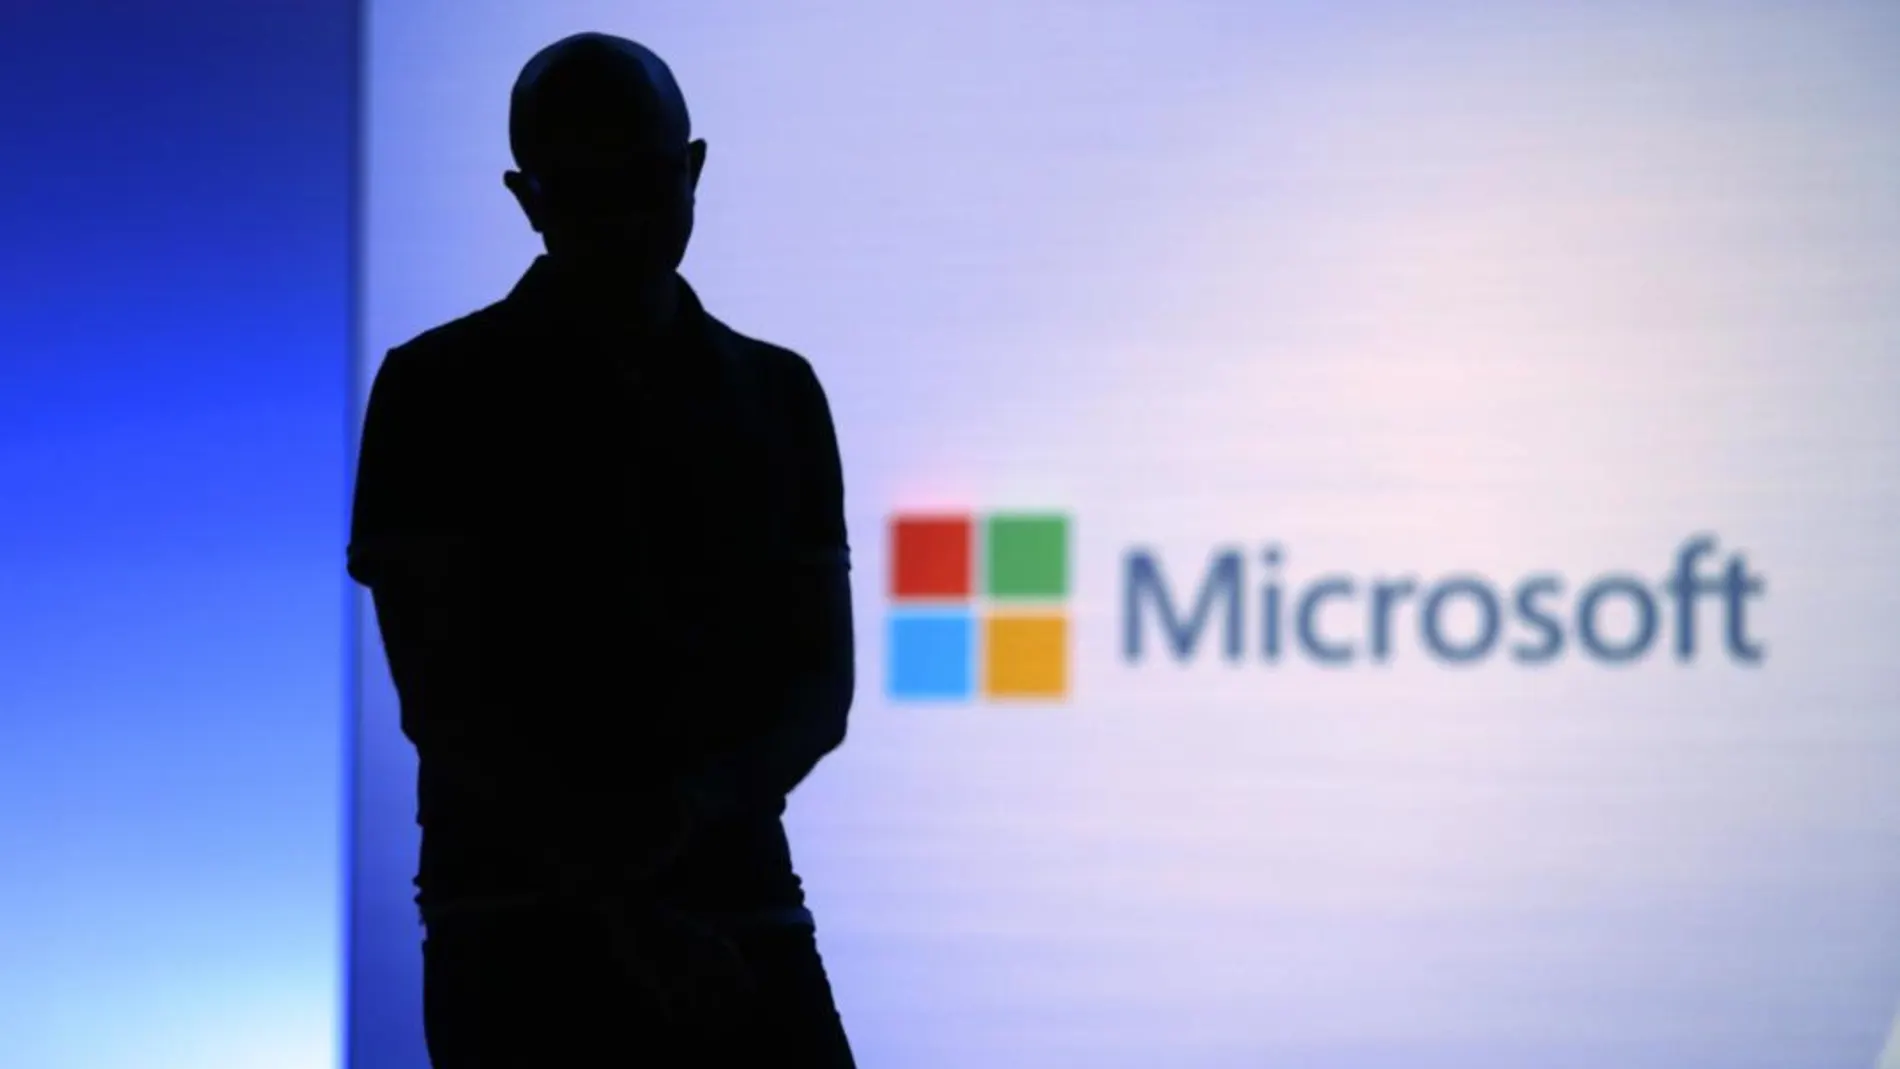 Perfil del consejero delegado de Microsoft, Satya Nadella, durante una presentación de productos de la compañía / AP